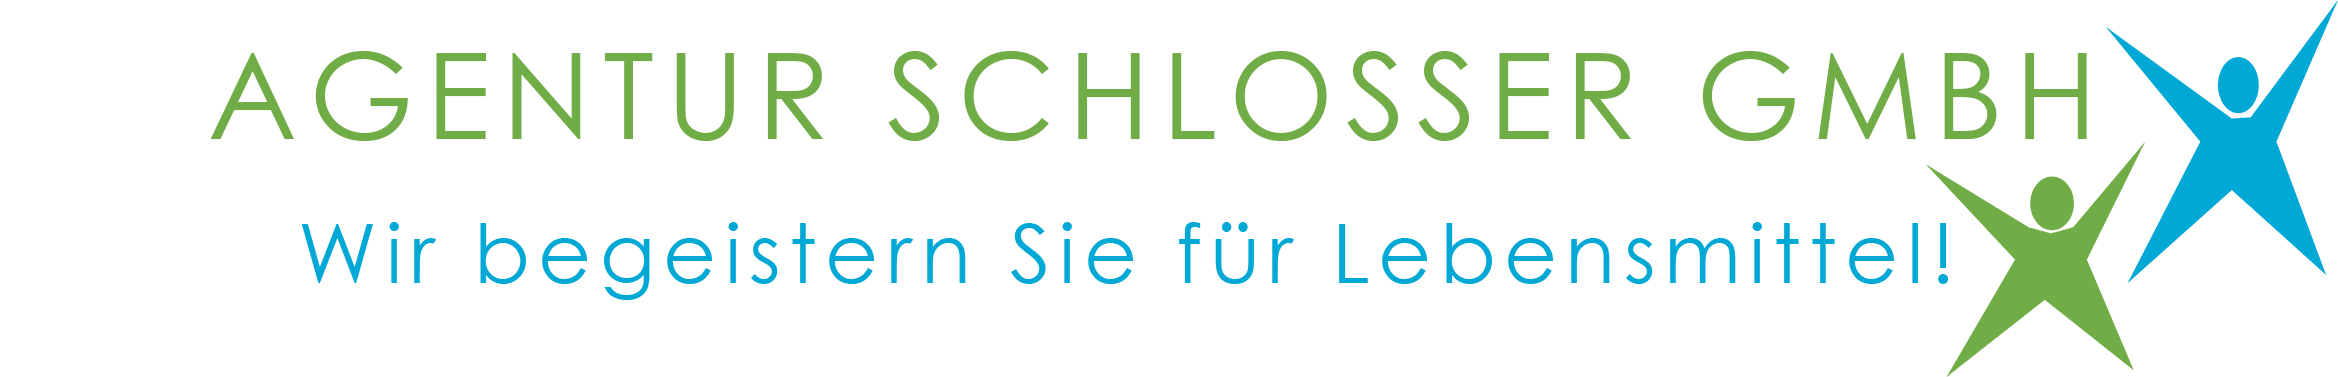 Agentur Schlosser GmbH Logo